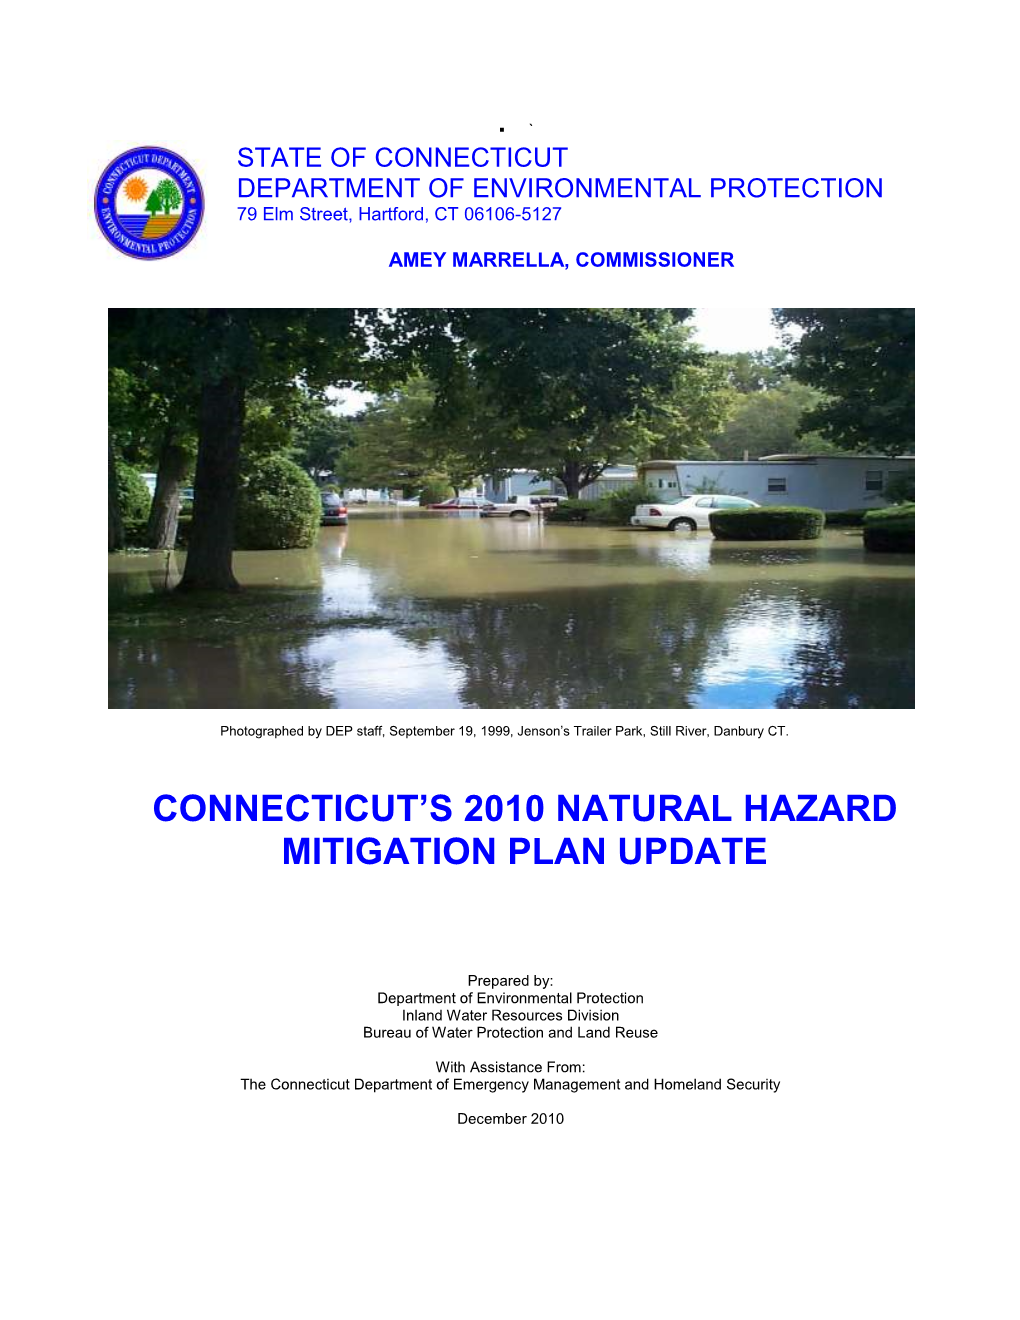 Connecticut's Natural Hazard Mitigation Plan Update